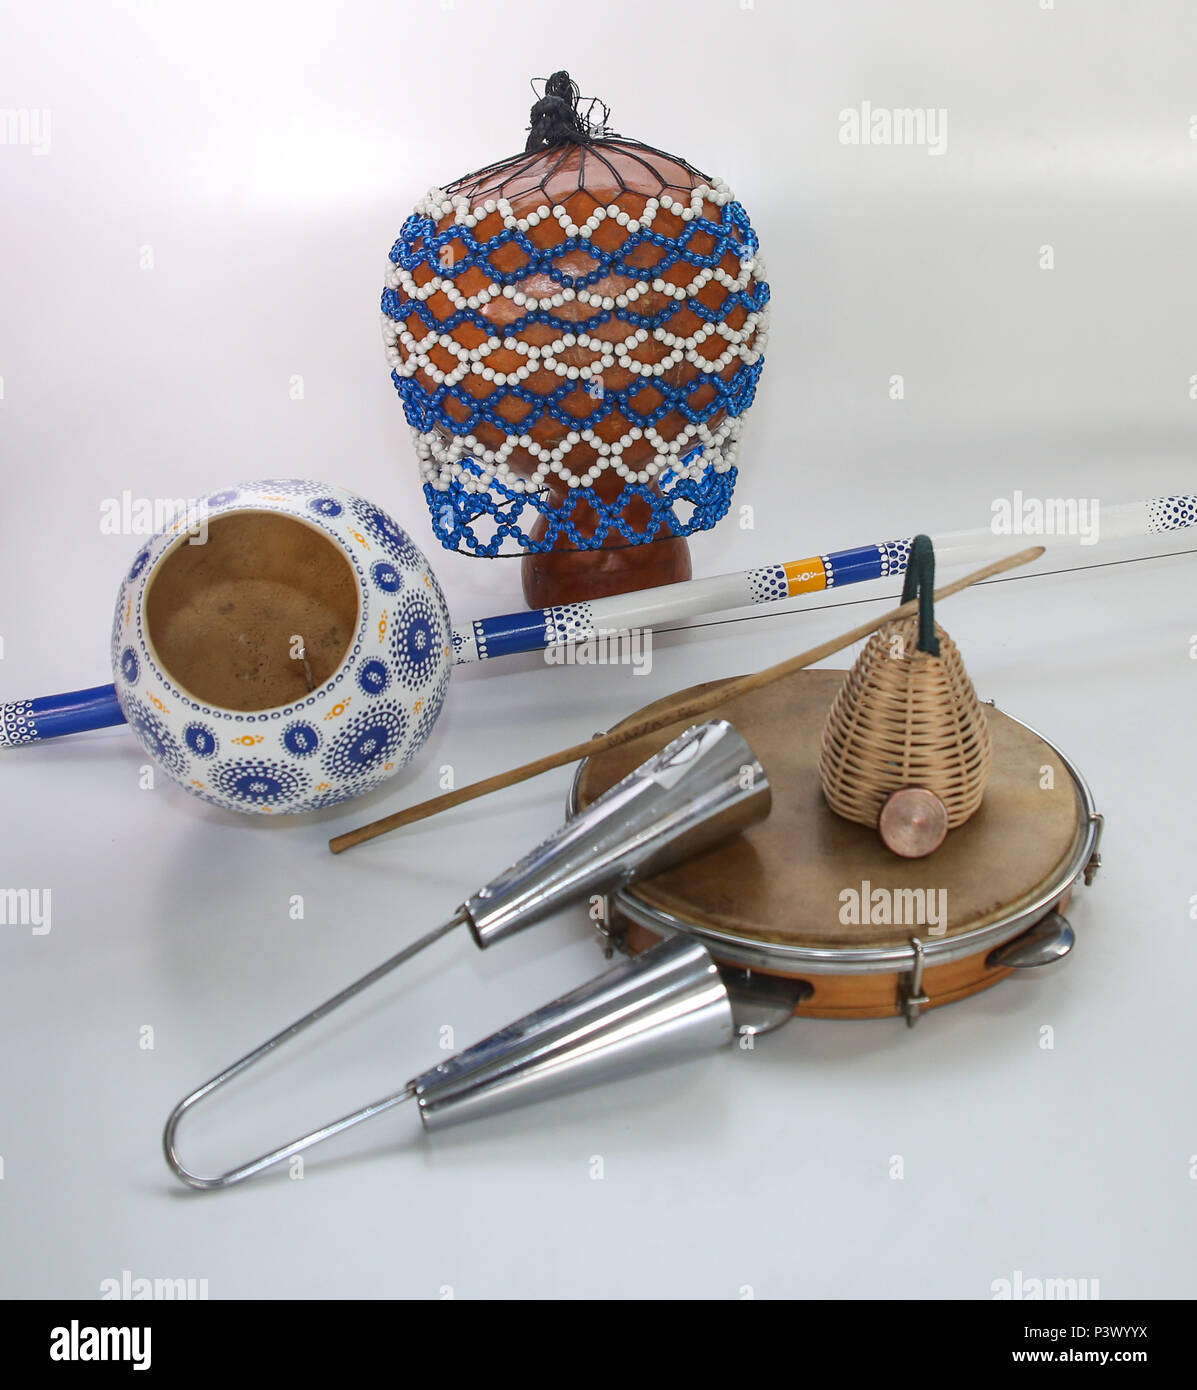 Na foto, xequerê, berimbau, agogô, pandeiro e caxixi. Instrumentos musicais utilizados no acompanhamento da capoeira. Stock Photo